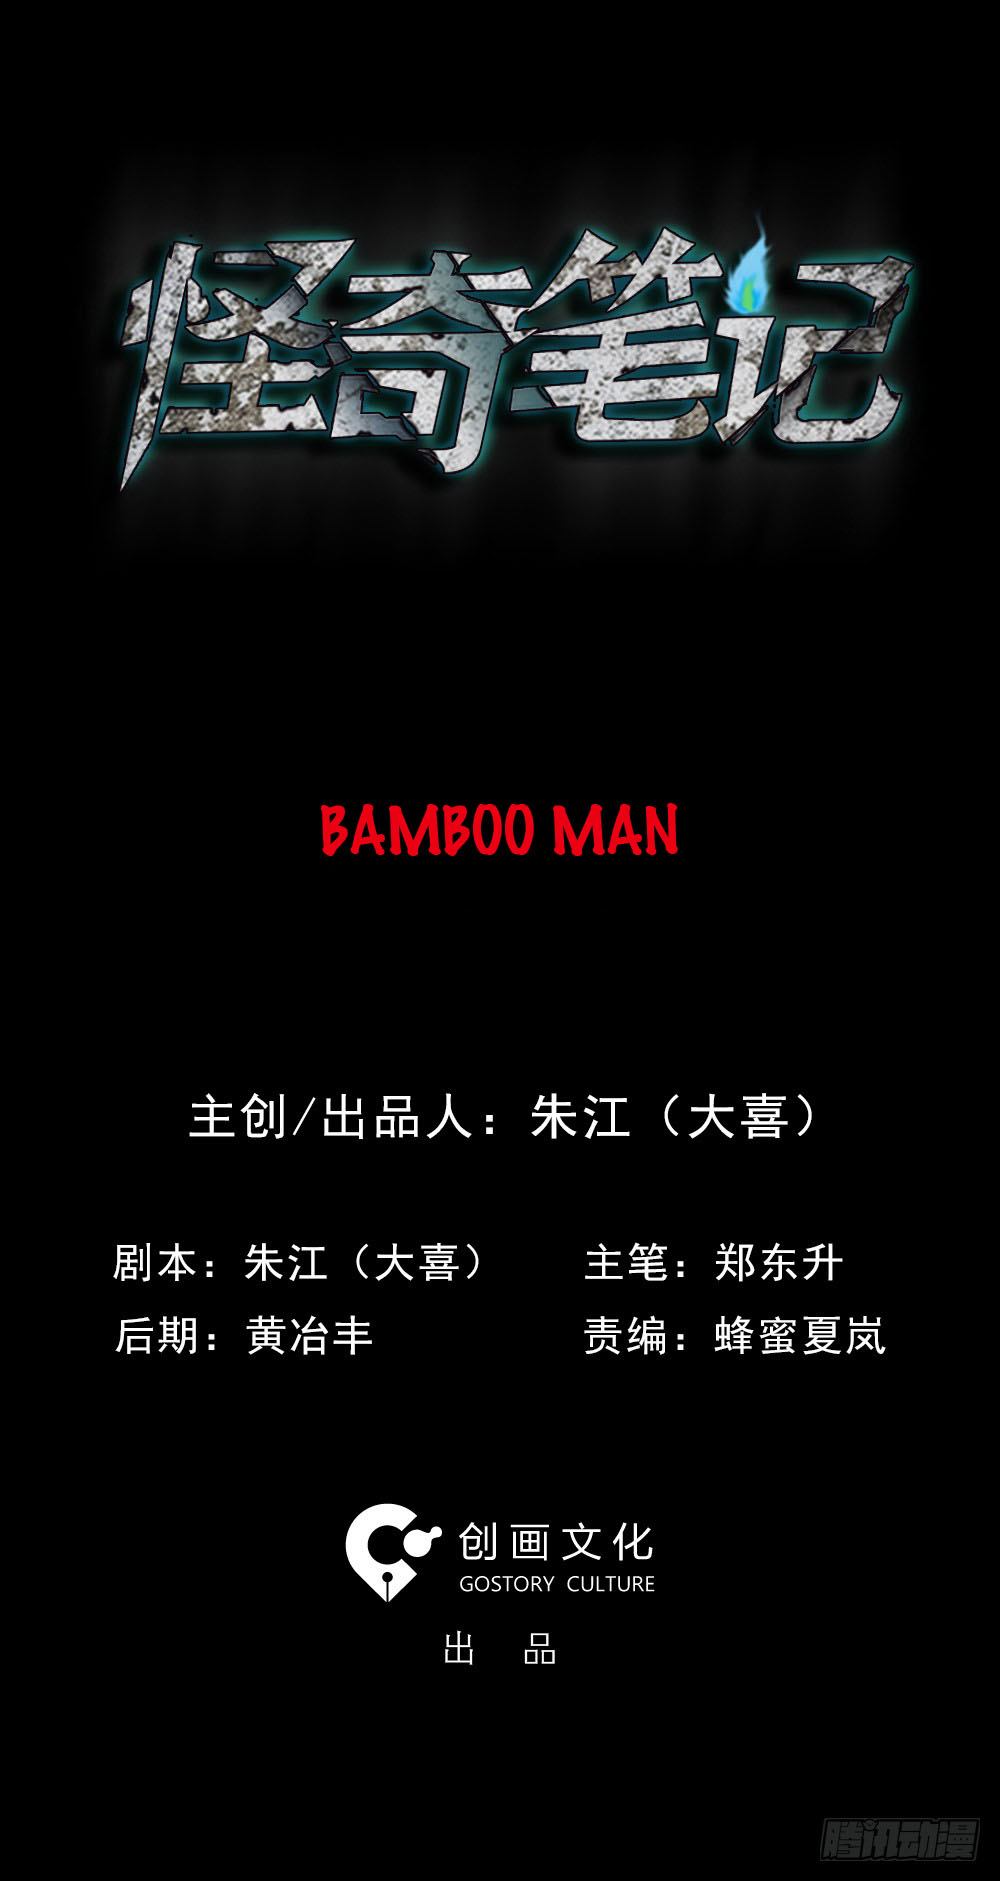 Guai Qi Bi Ji Ch. 1 Bamboo Man